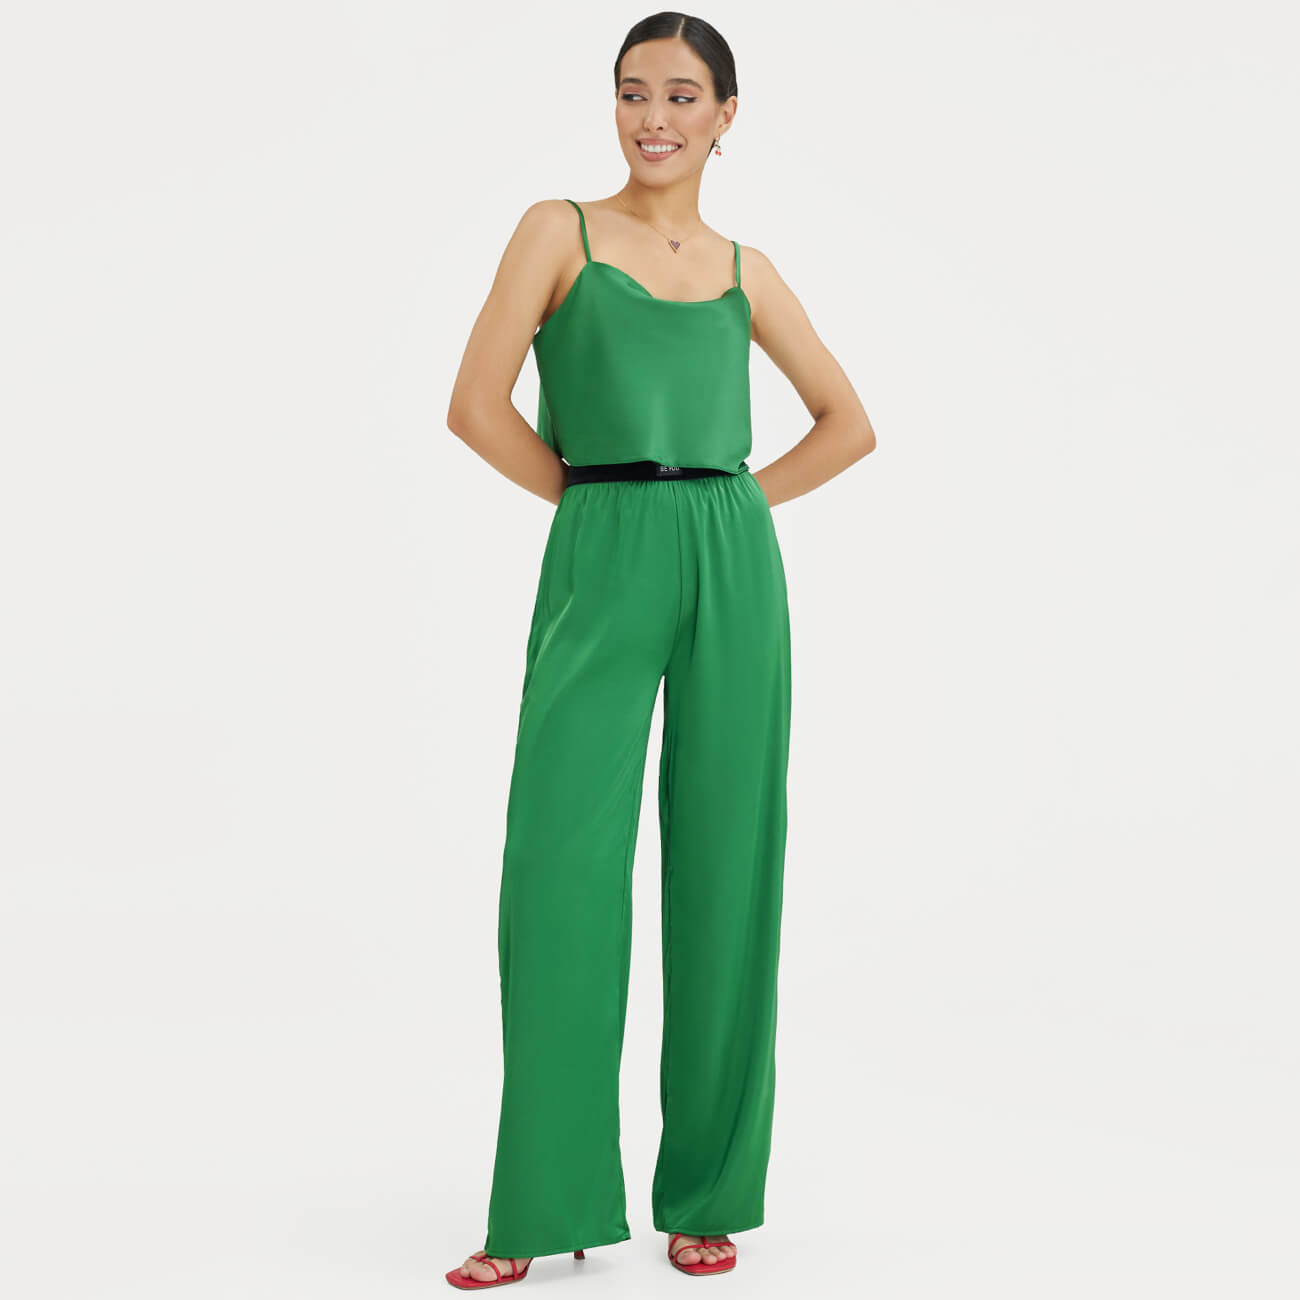 Брюки женские, р. M, широкие, полиэстер/эластан, зеленые, Madeline широкие брюки adidas ic5443 maglil